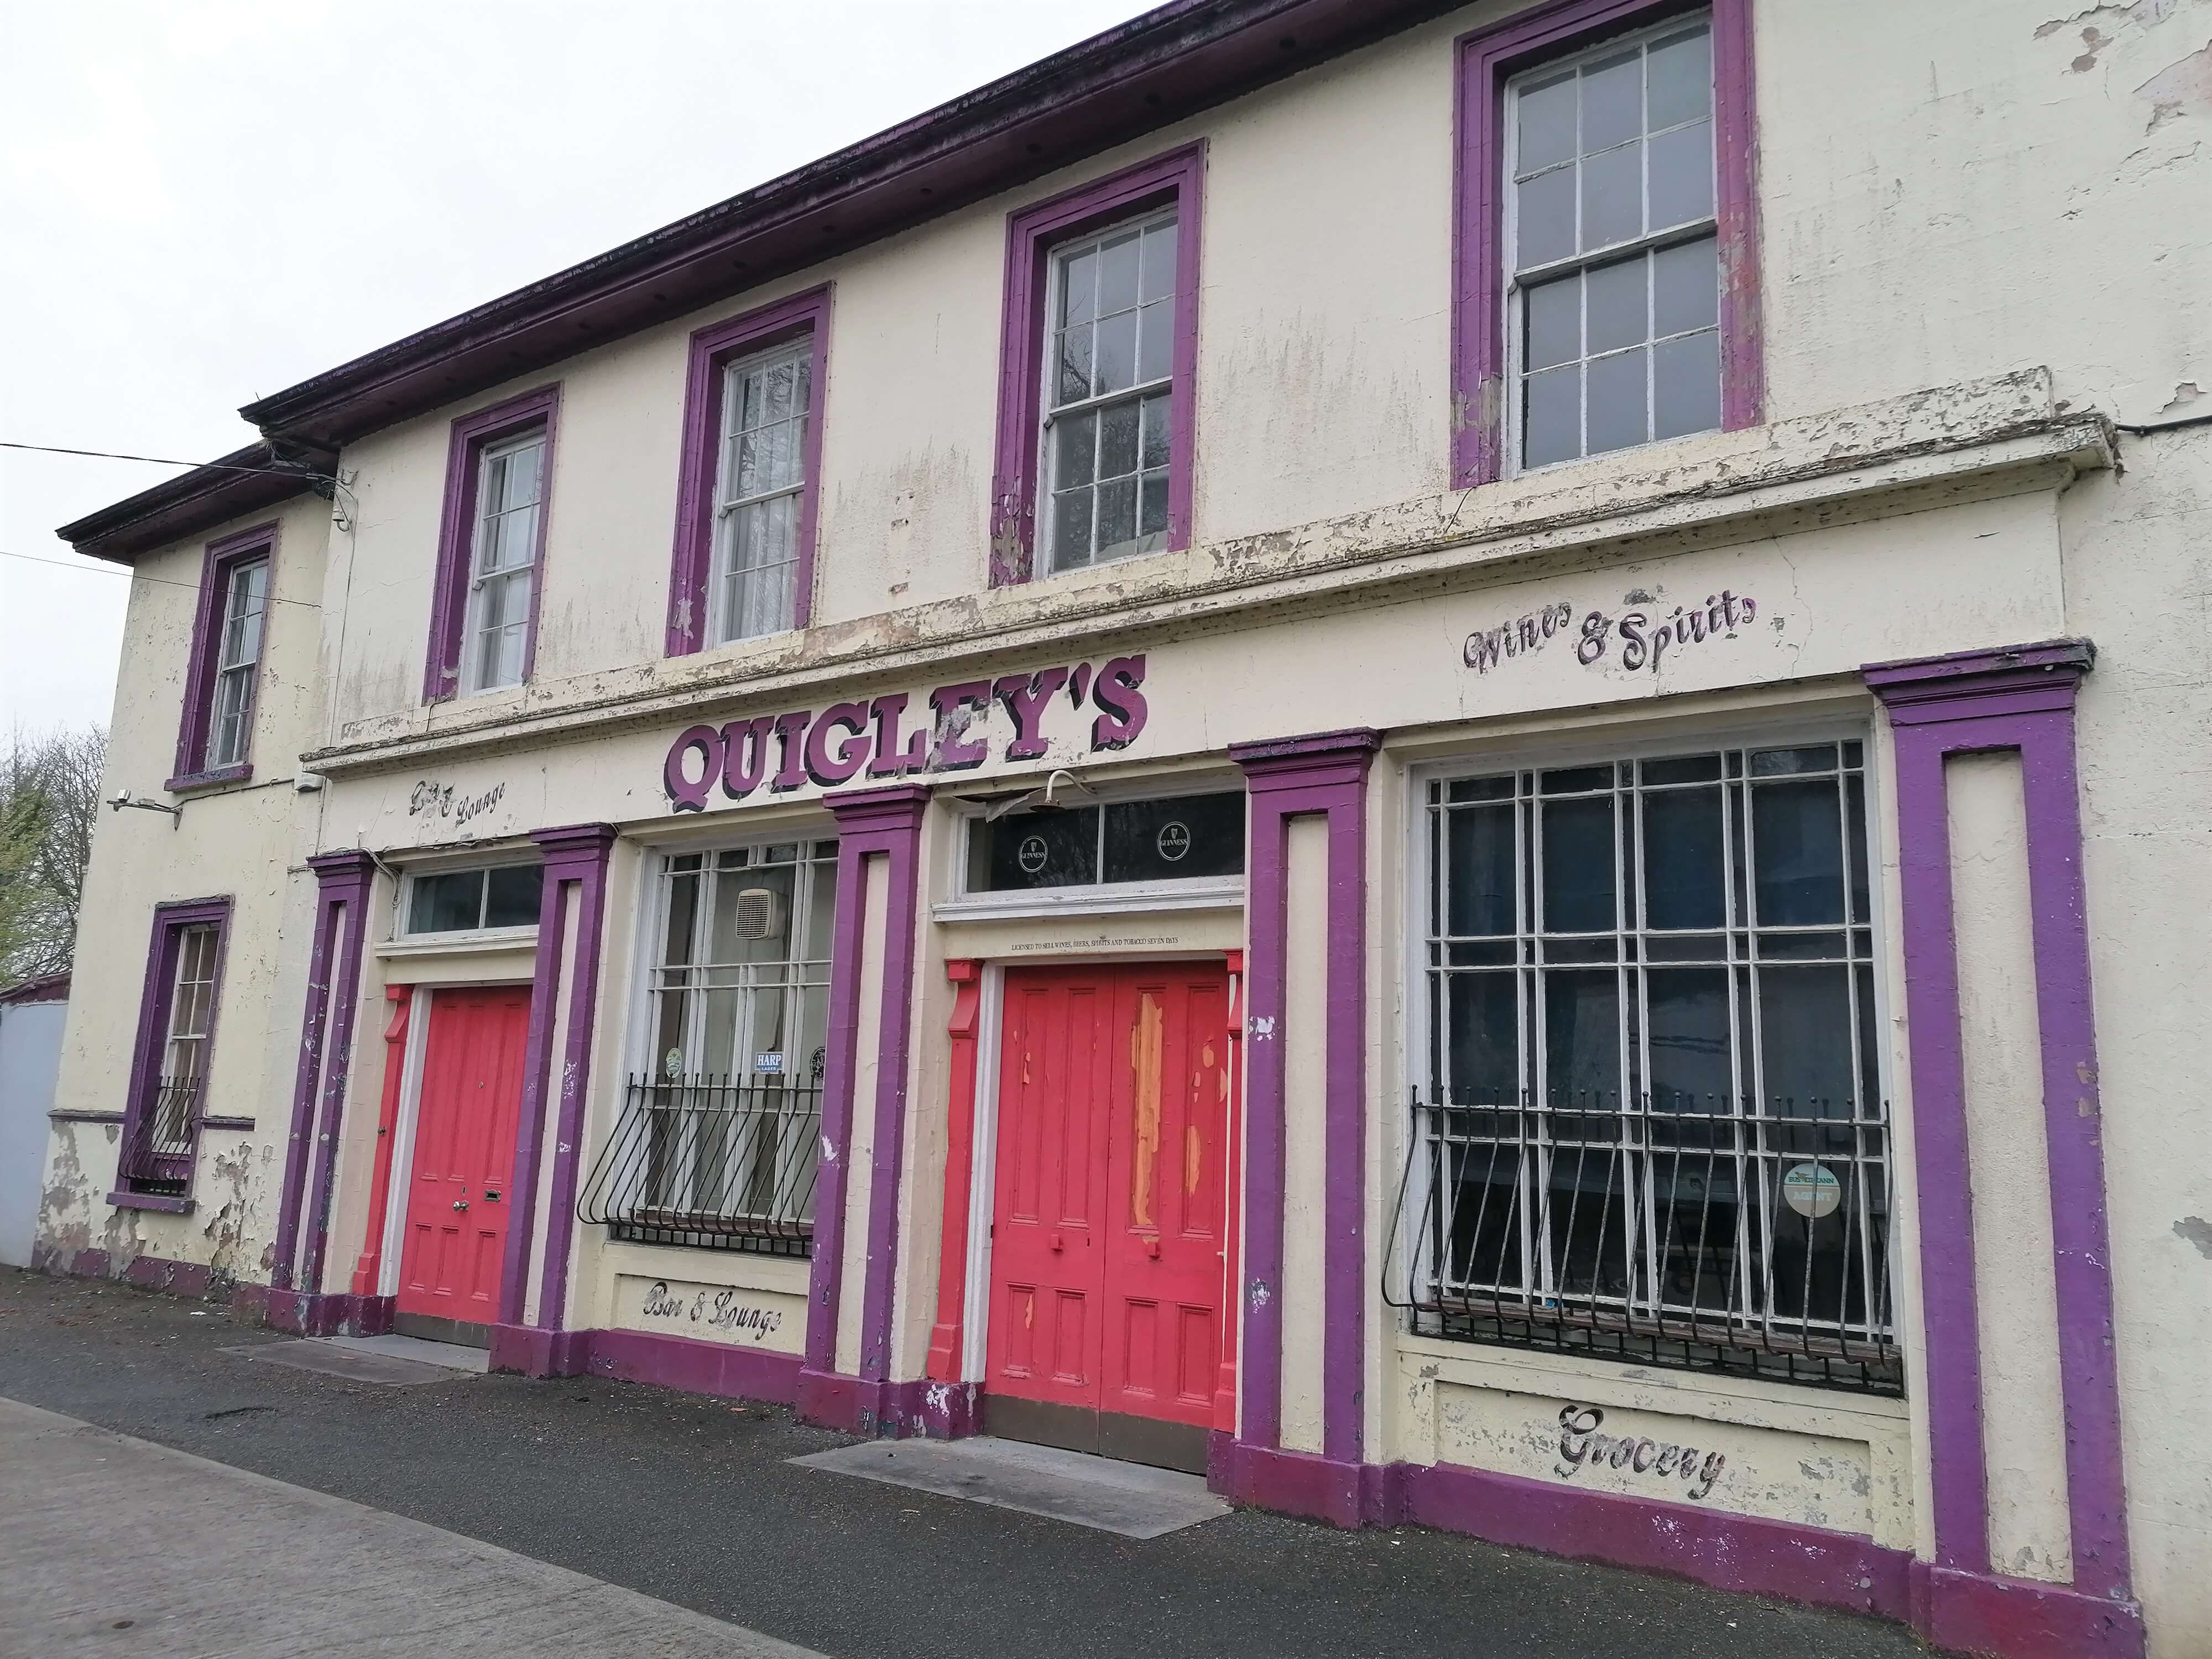 Sligo to benefit under Historic Structures Fund 2022